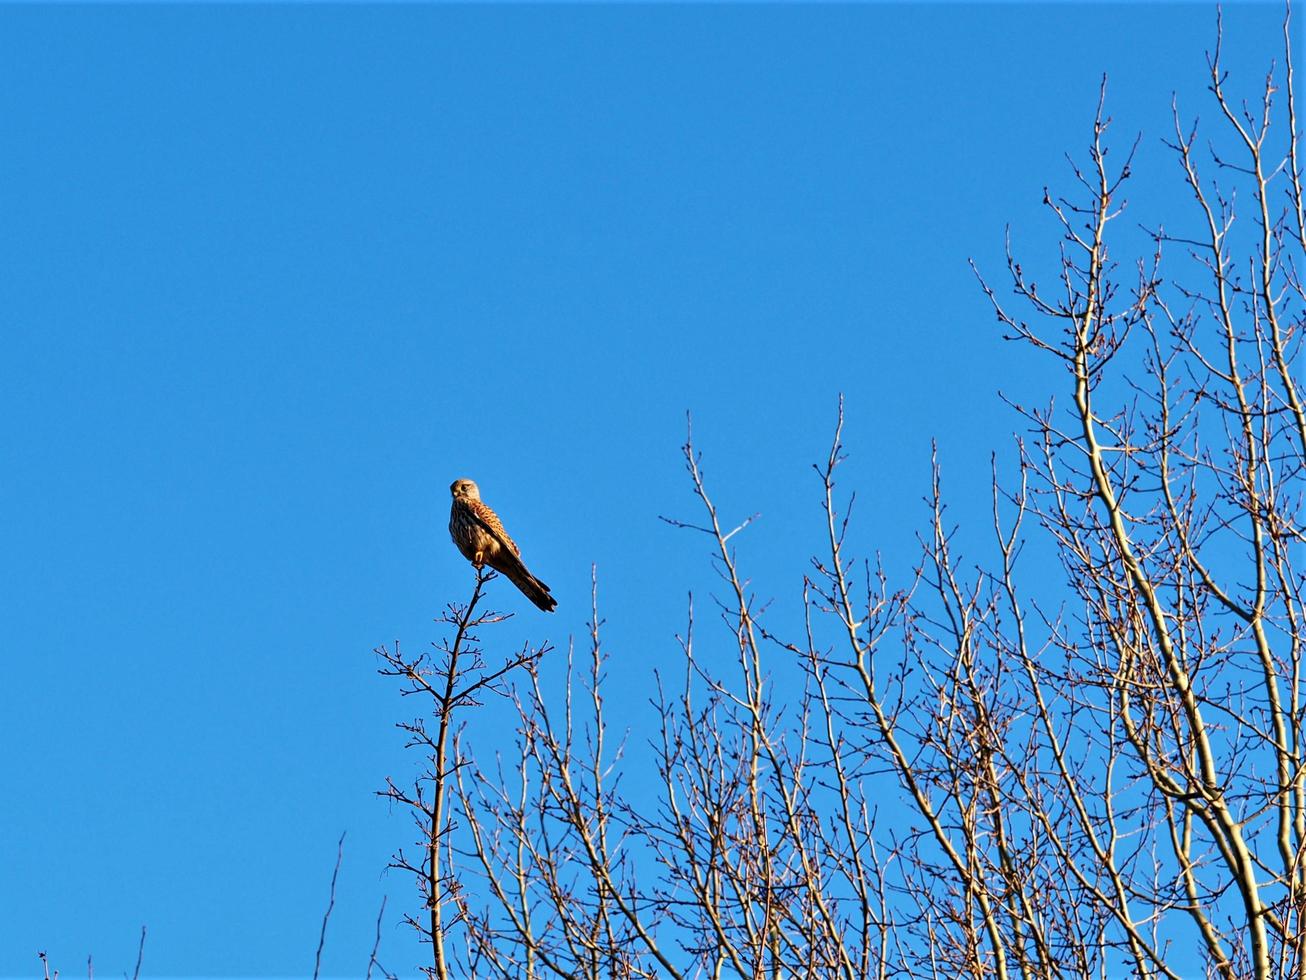 tornfalk uppflugen på en bar vintergren med en blå himmel foto